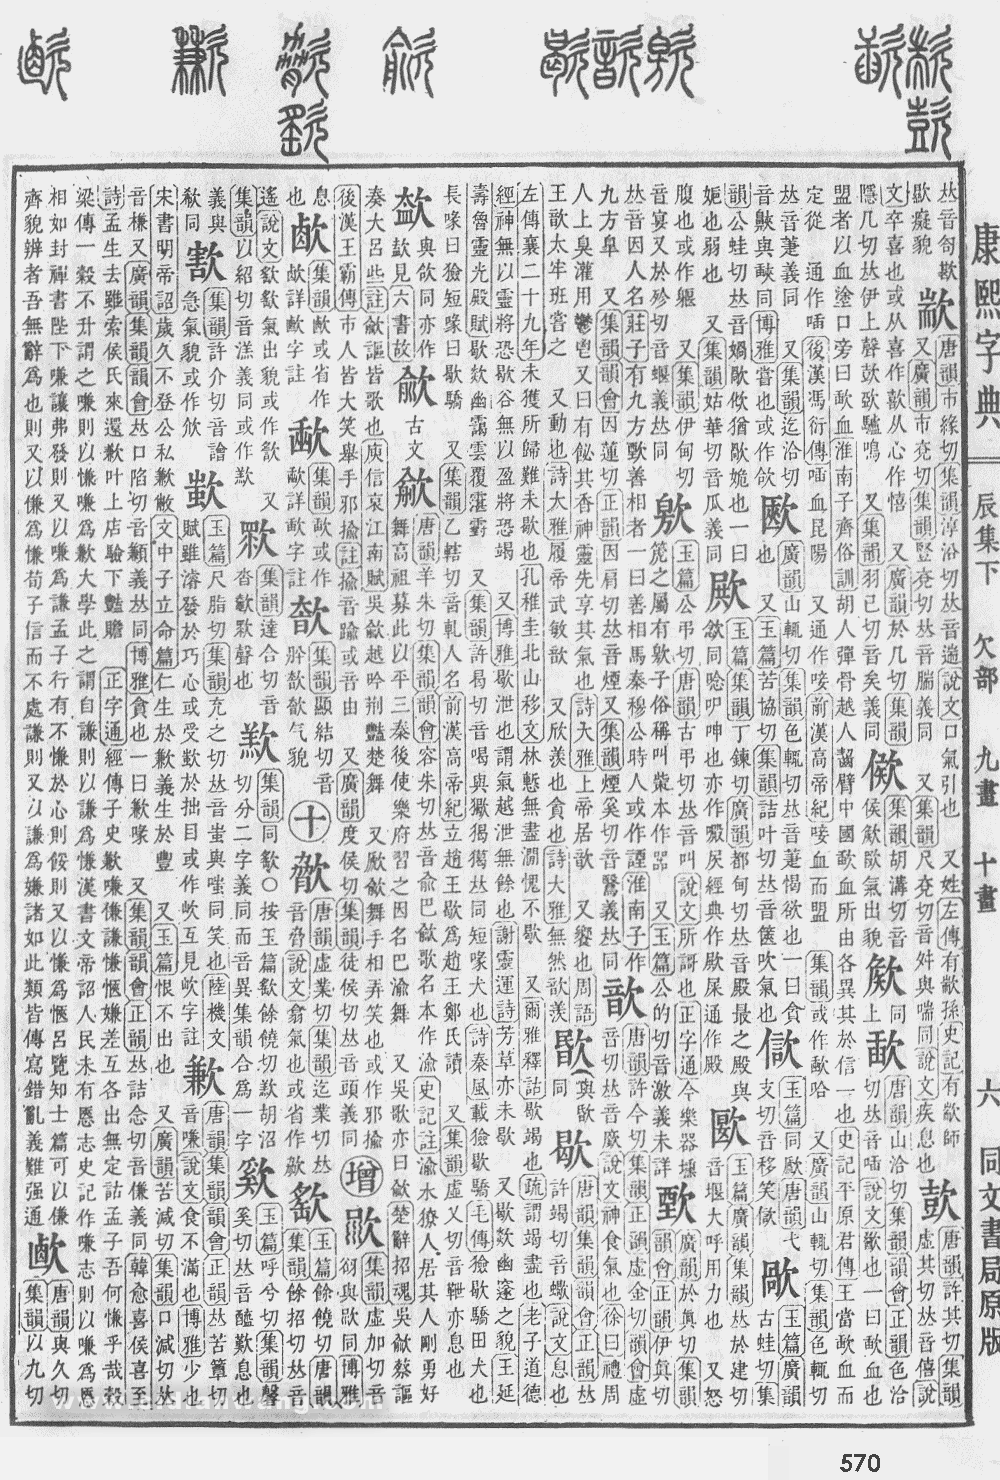 康熙字典掃描版第570頁